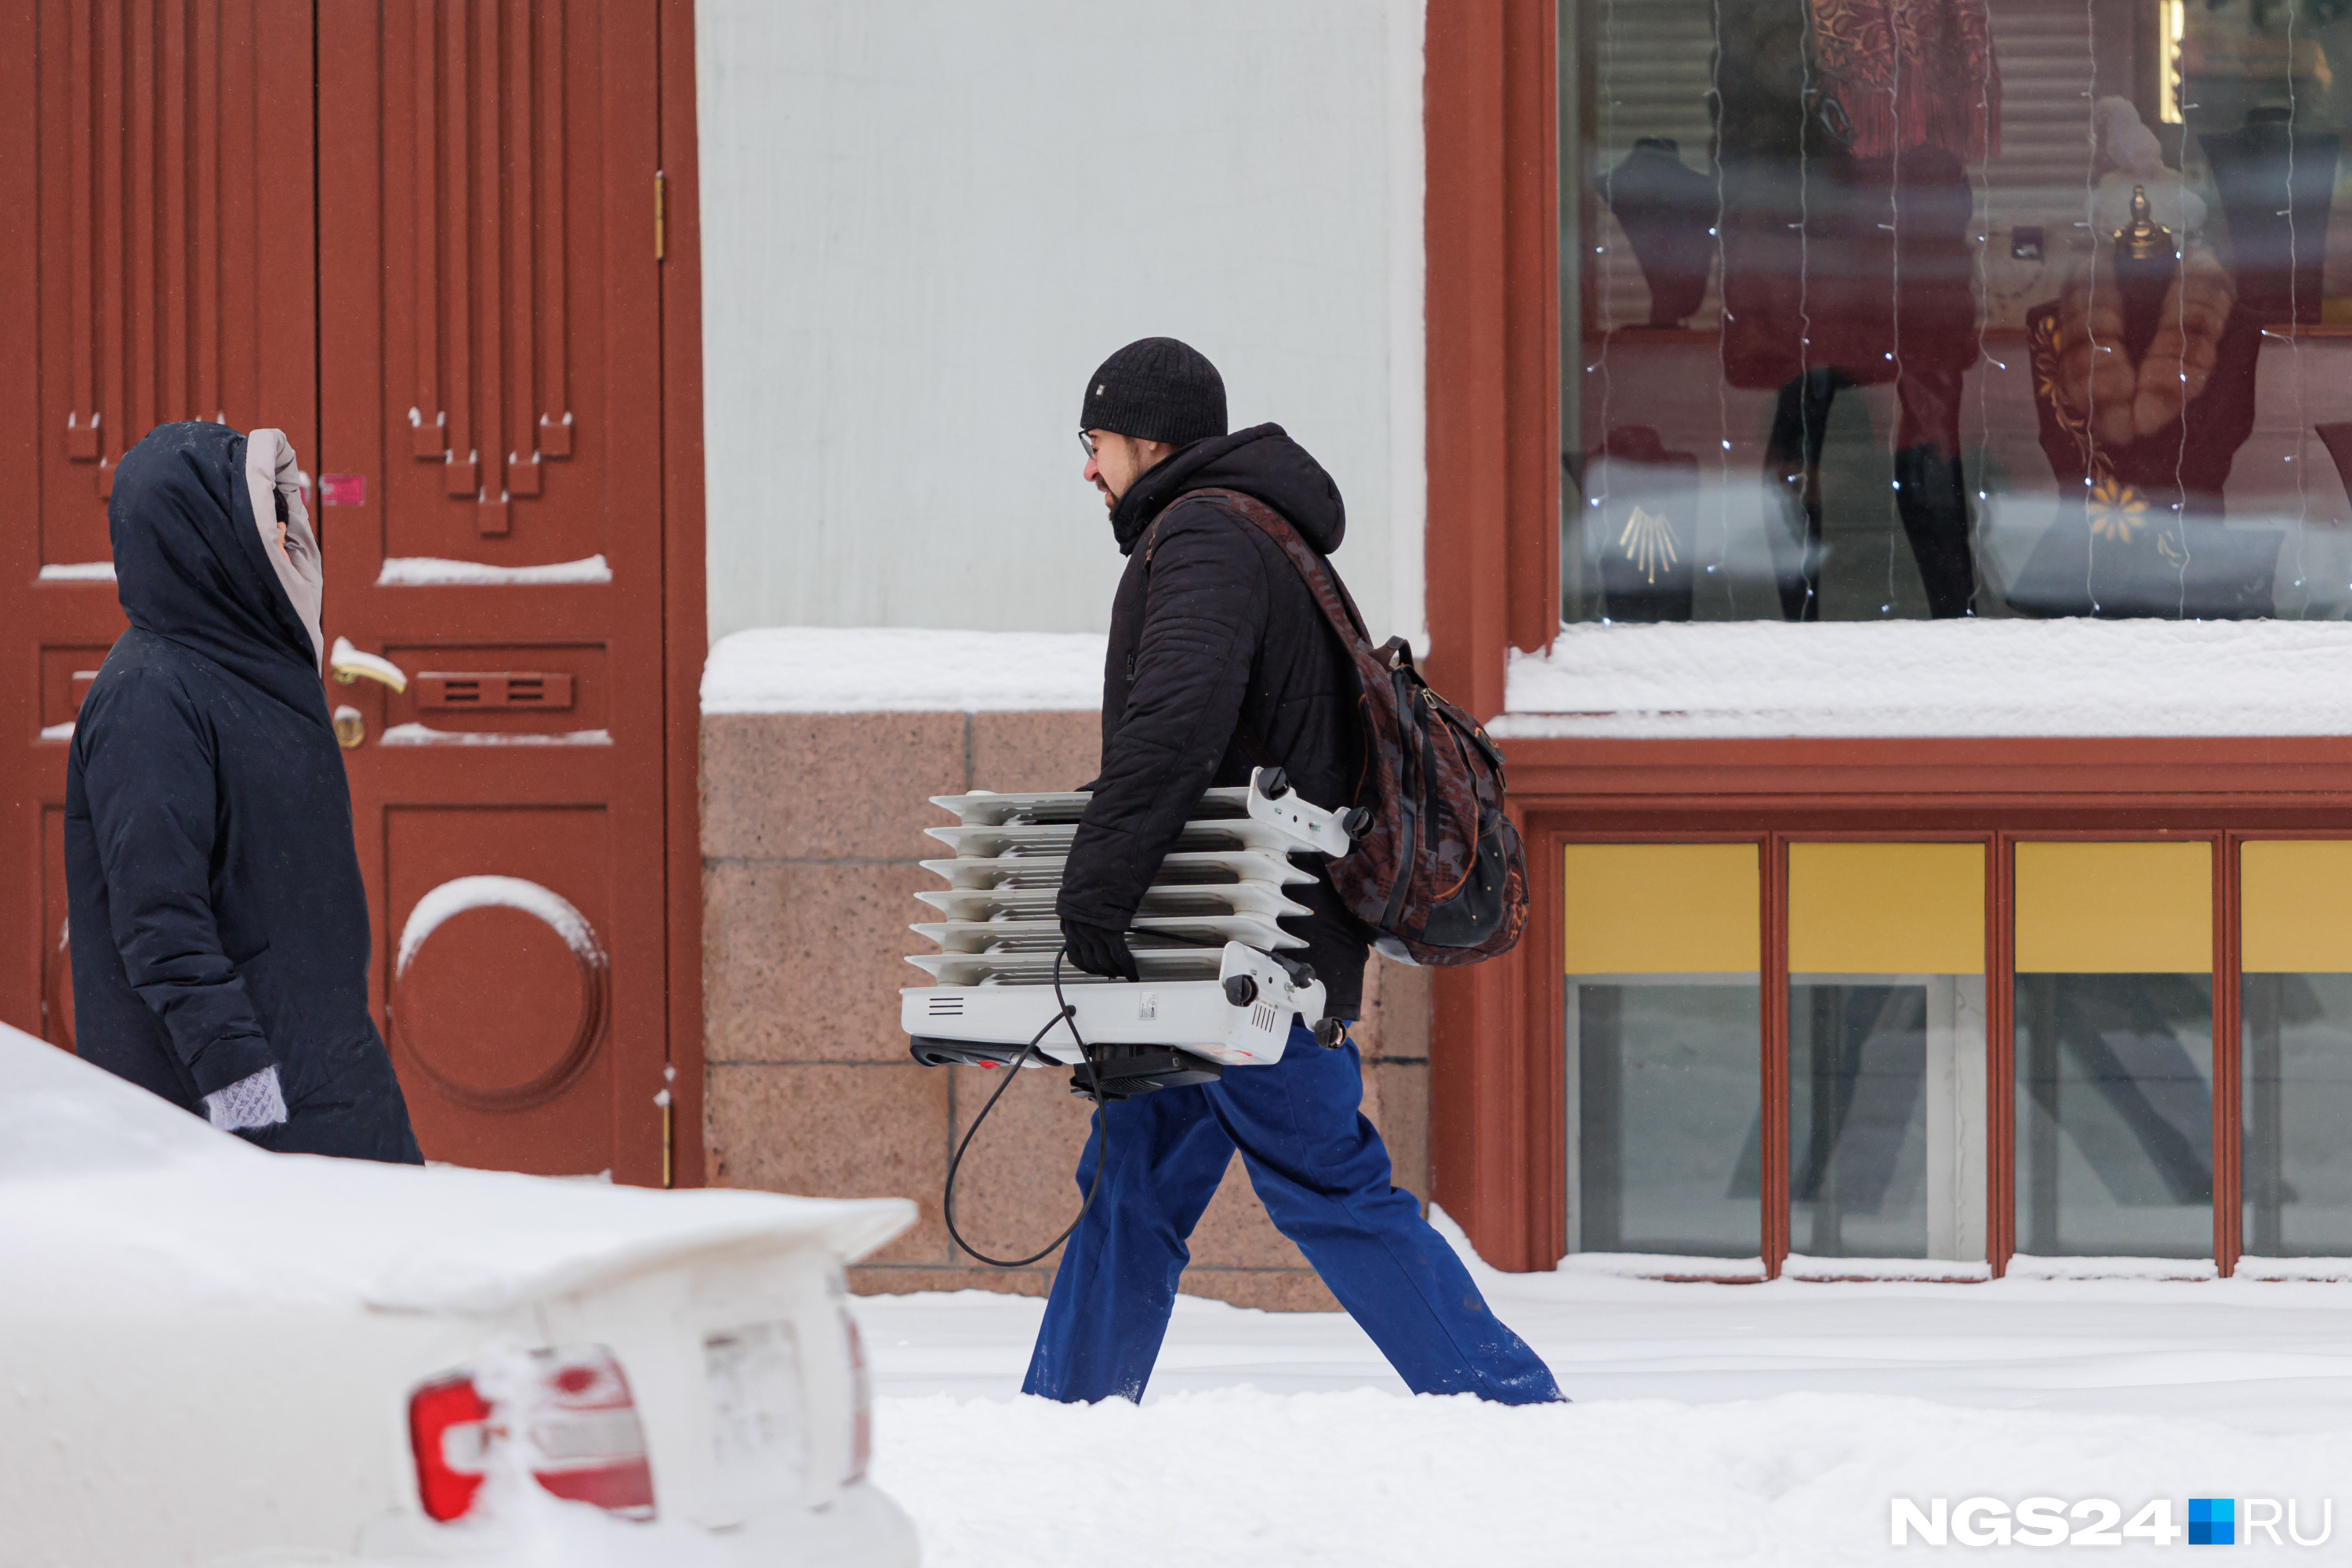 Обогреватель с собой даже на улицу — чтобы не замерзнуть :)